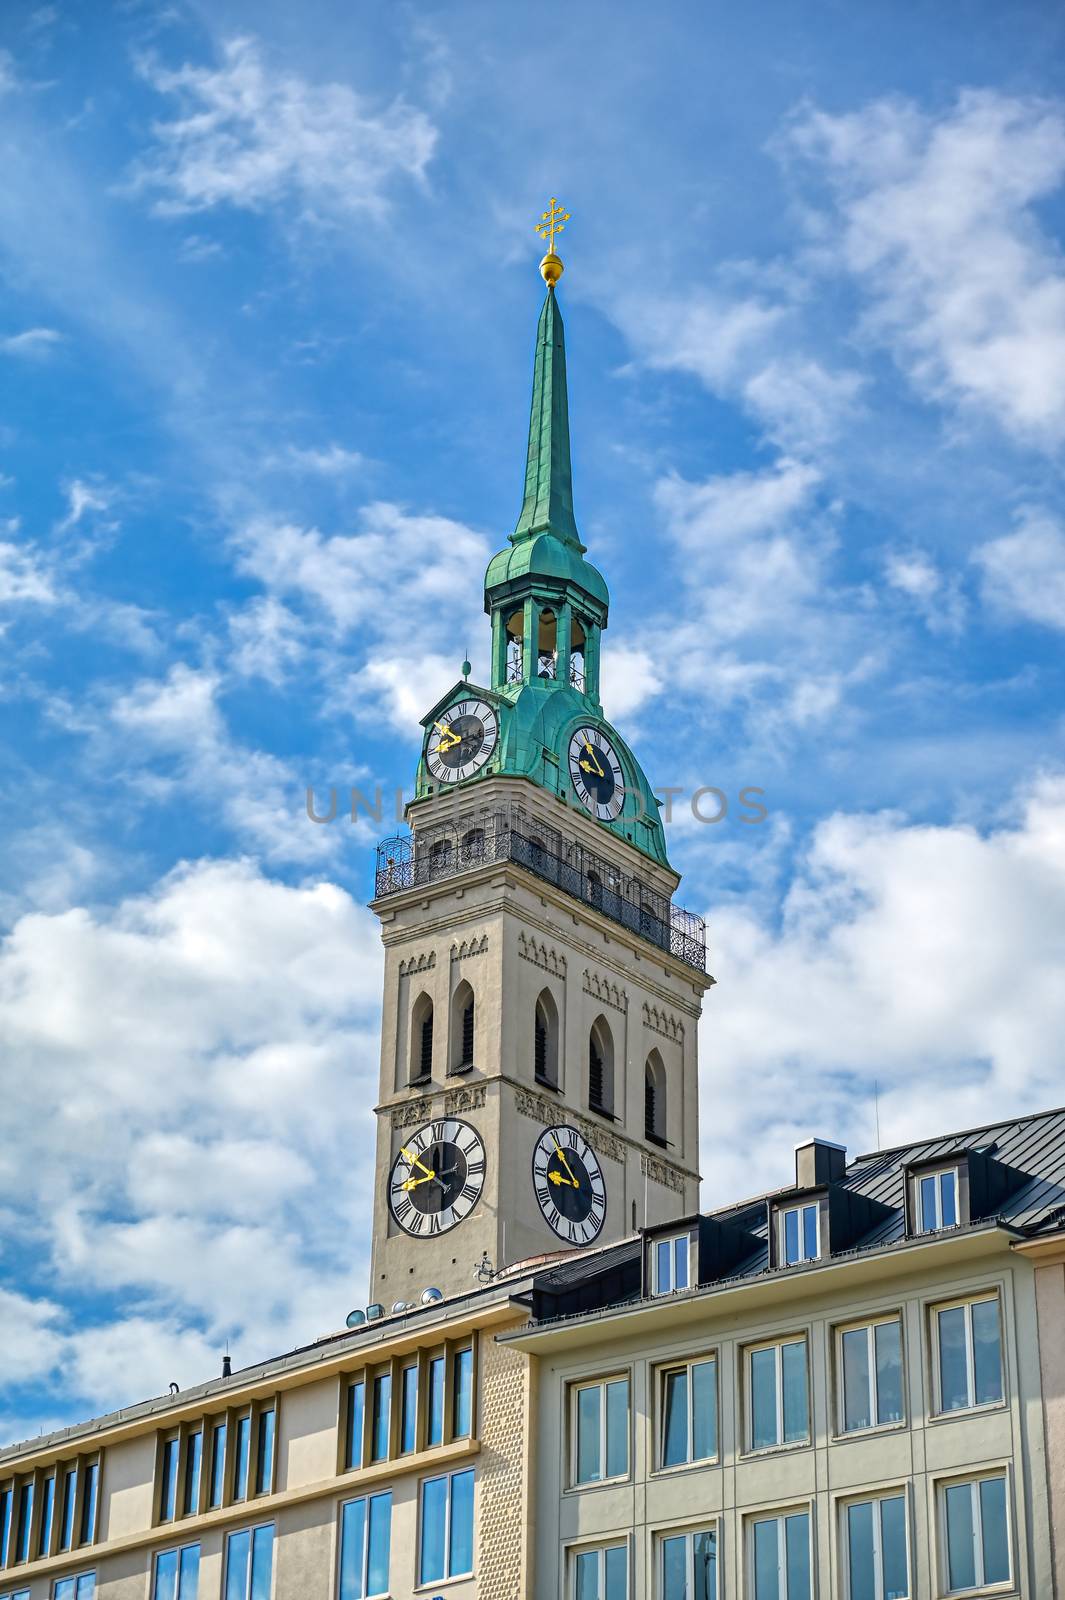 St. Peter's Church in Munich, Germany by jbyard22